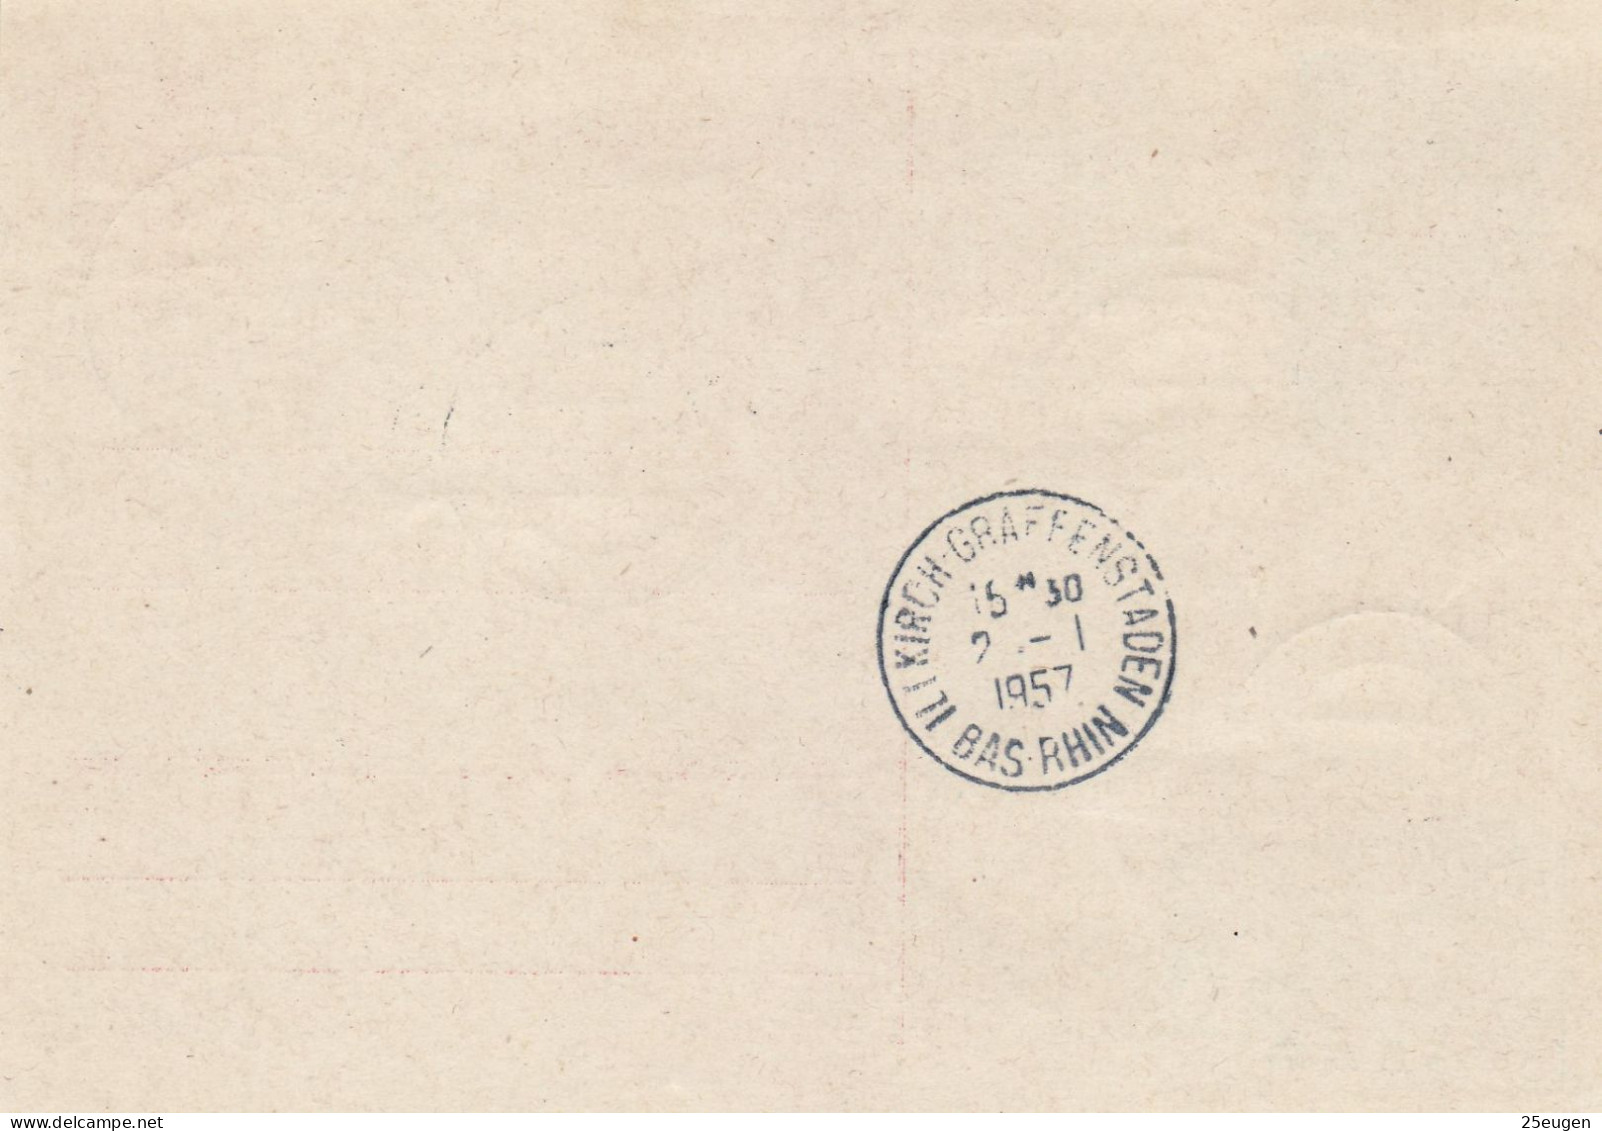 SAAR 1957 POSTCARD MiNr P 36 A  SENT FROM SAARBRUECKEN  TO GRAFFENSTADEN - Briefe U. Dokumente